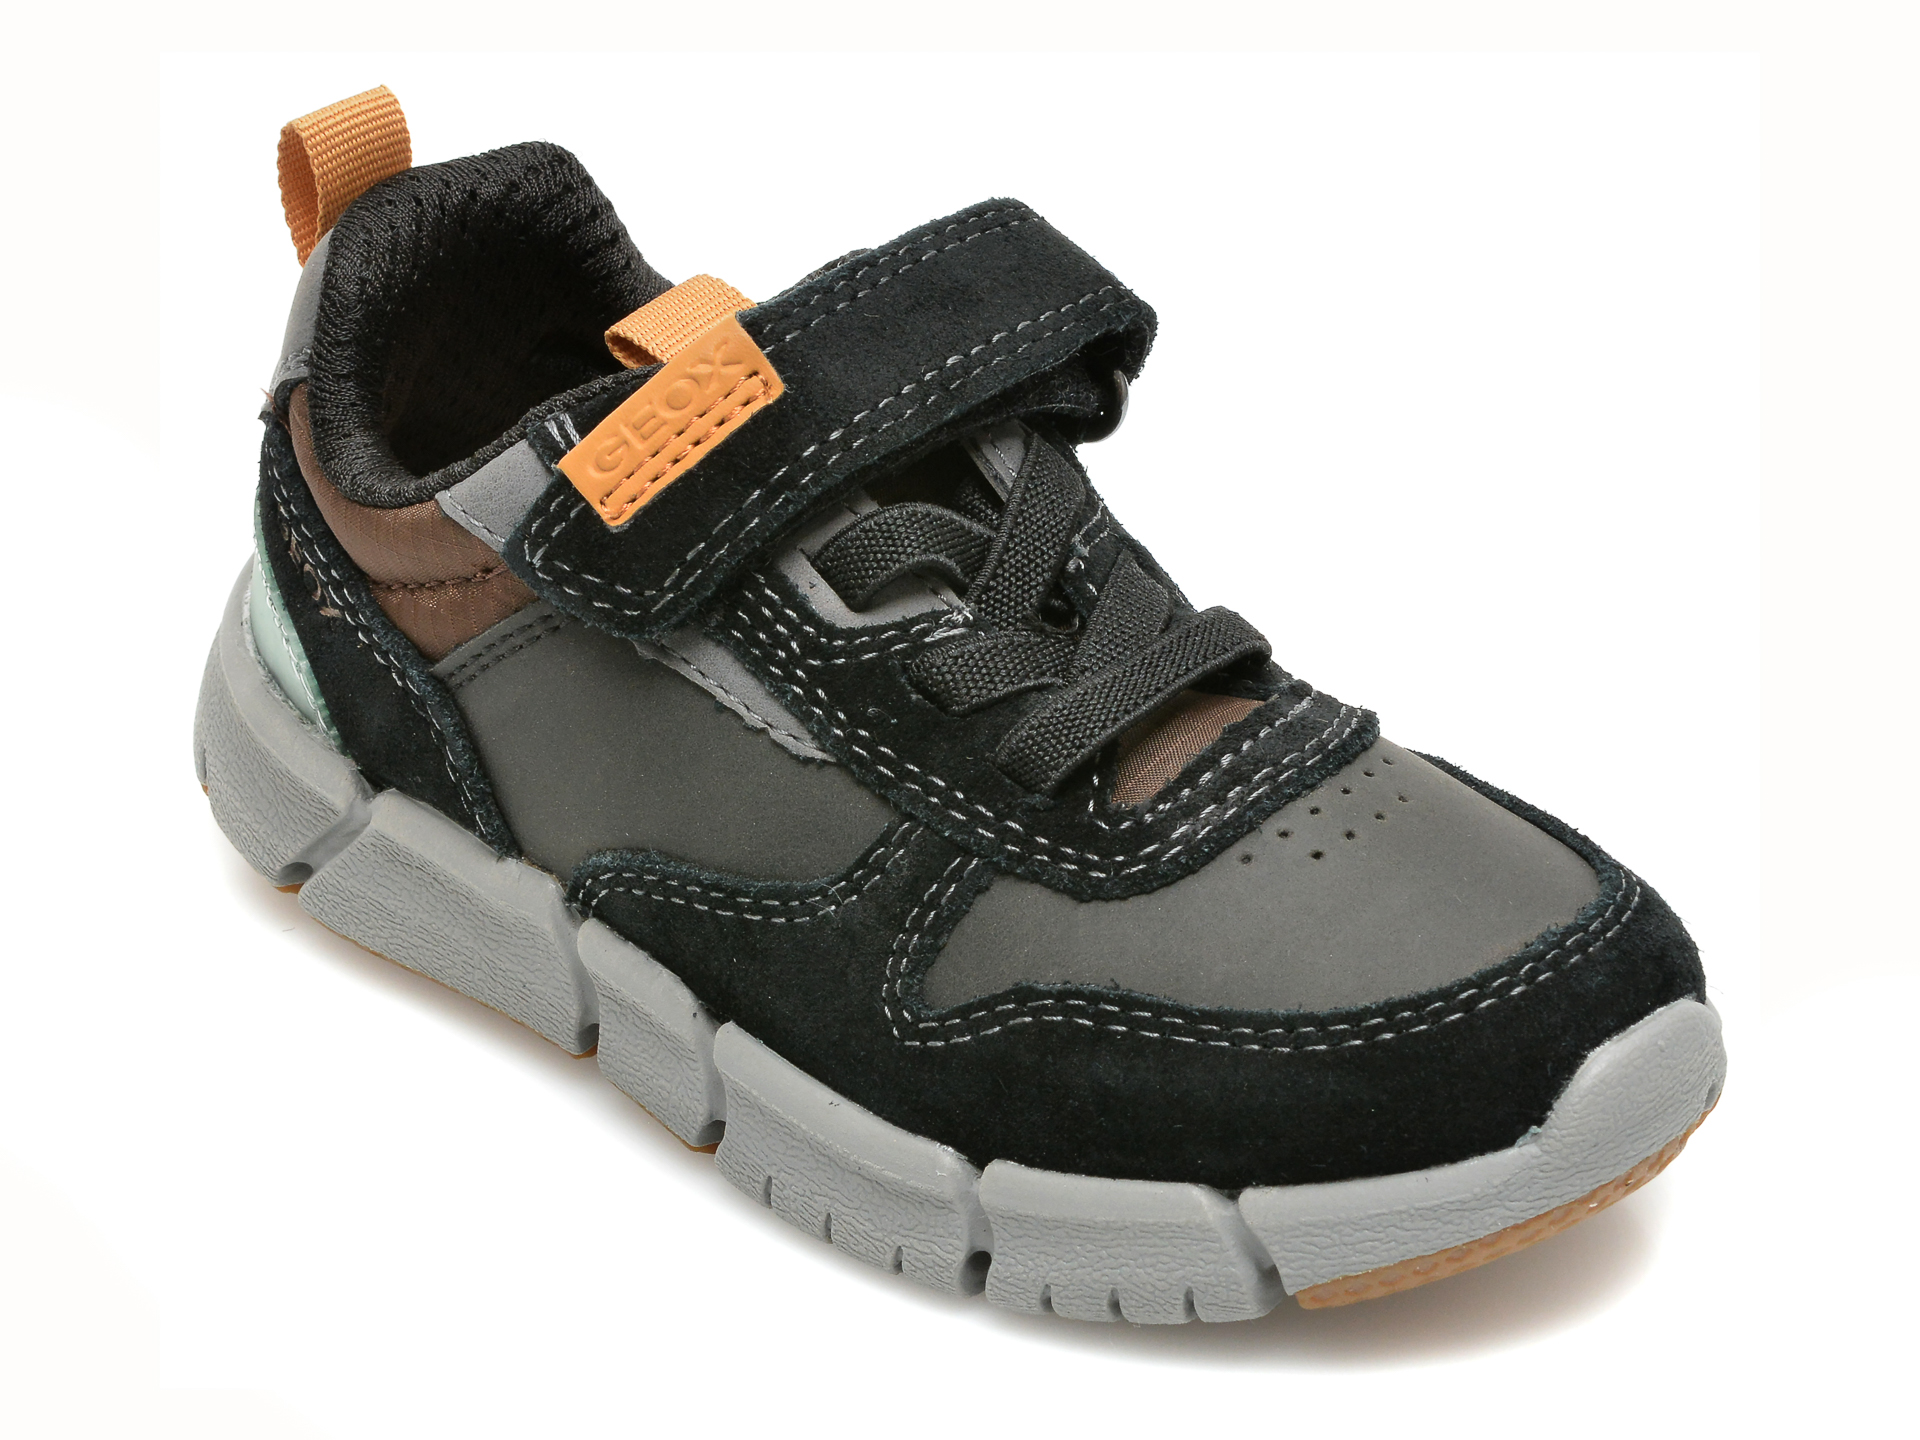 Pantofi sport GEOX negri, J169BC, din piele naturala Geox